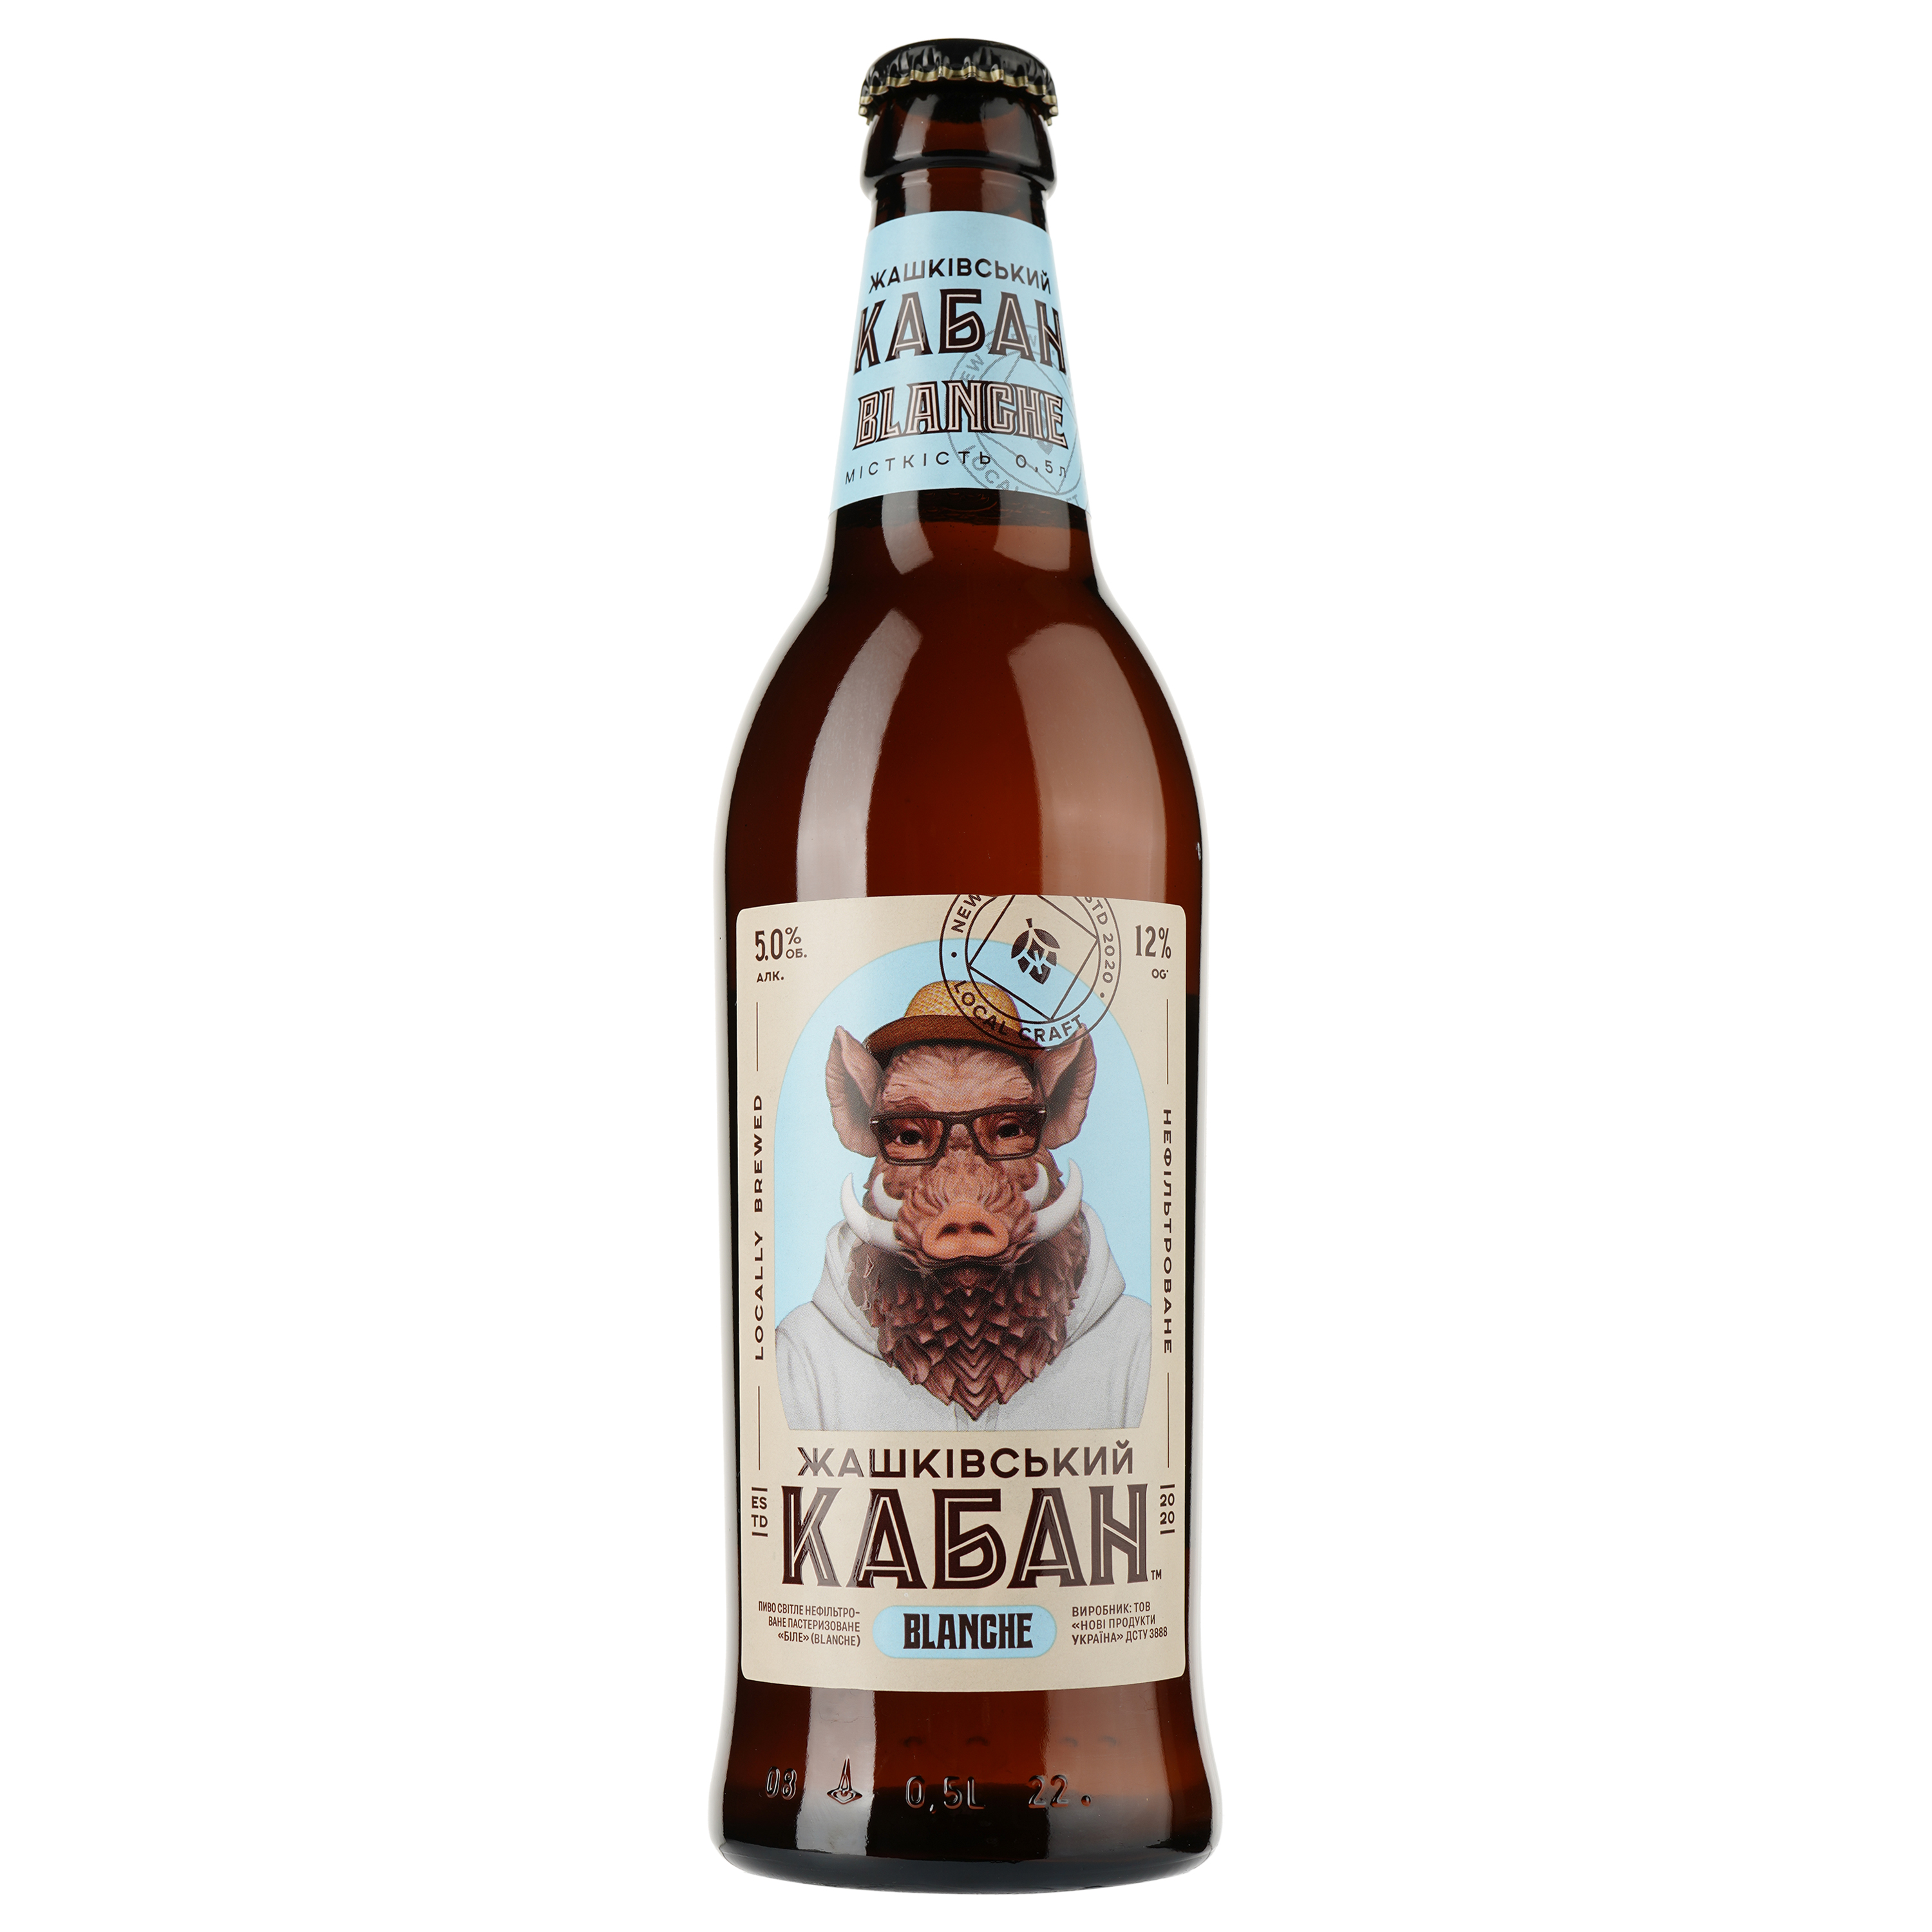 Пиво Жашківський кабан, белое, нефильтрованное, 5%, 0,5 л (825770) - фото 1